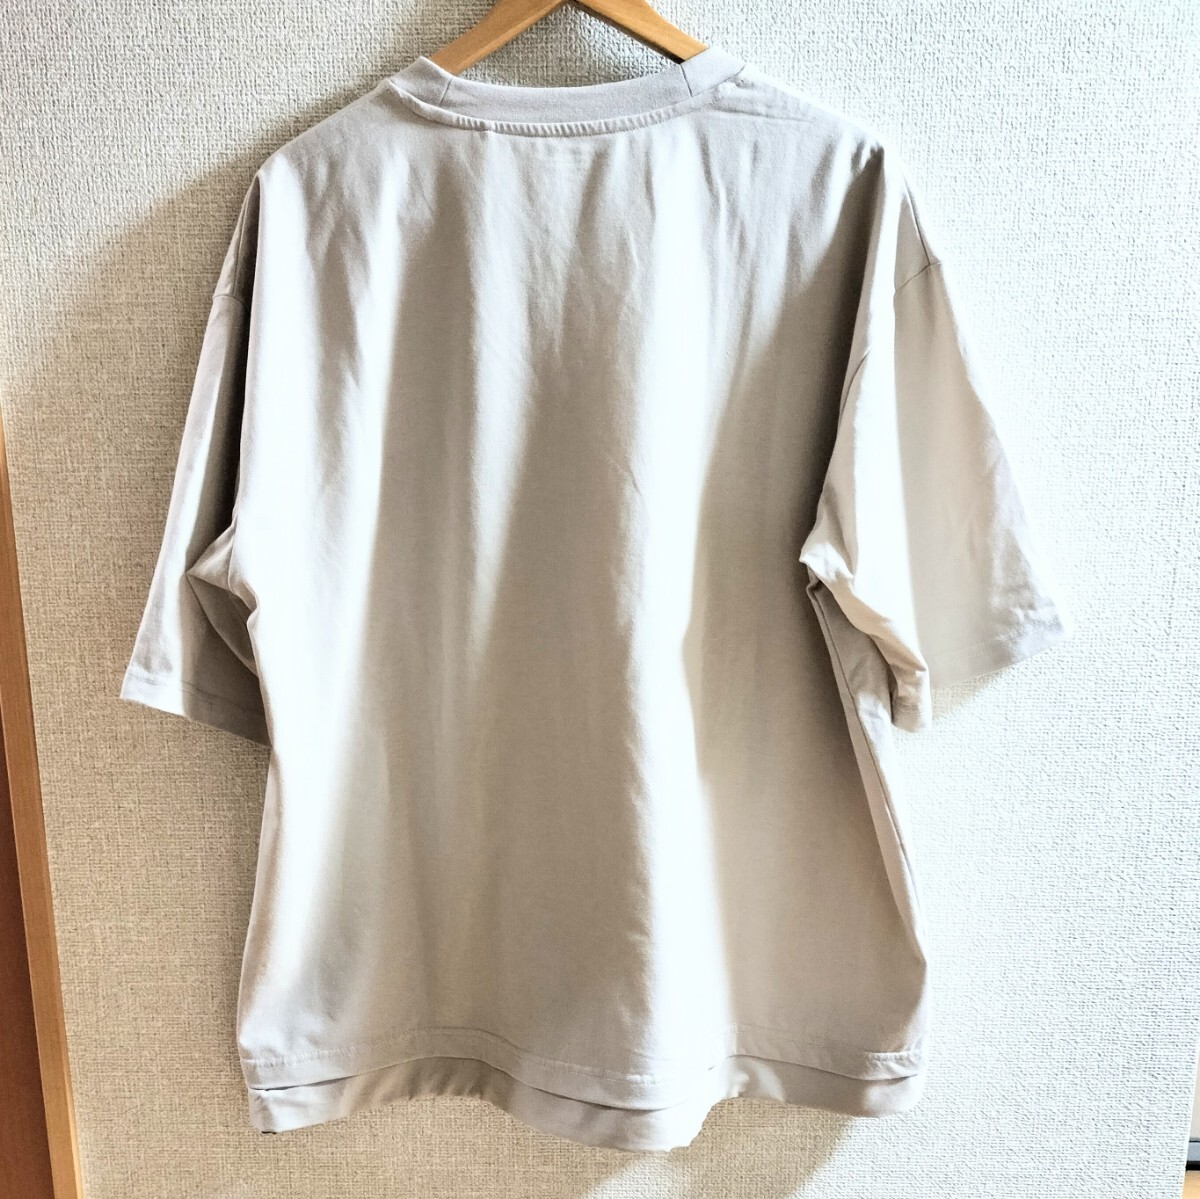 GU ジーユー ドライユーティリティポケットビッグTシャツ 5分袖 XL Tシャツ クルーネック グレージュ ライトグレー オーバーサイズ